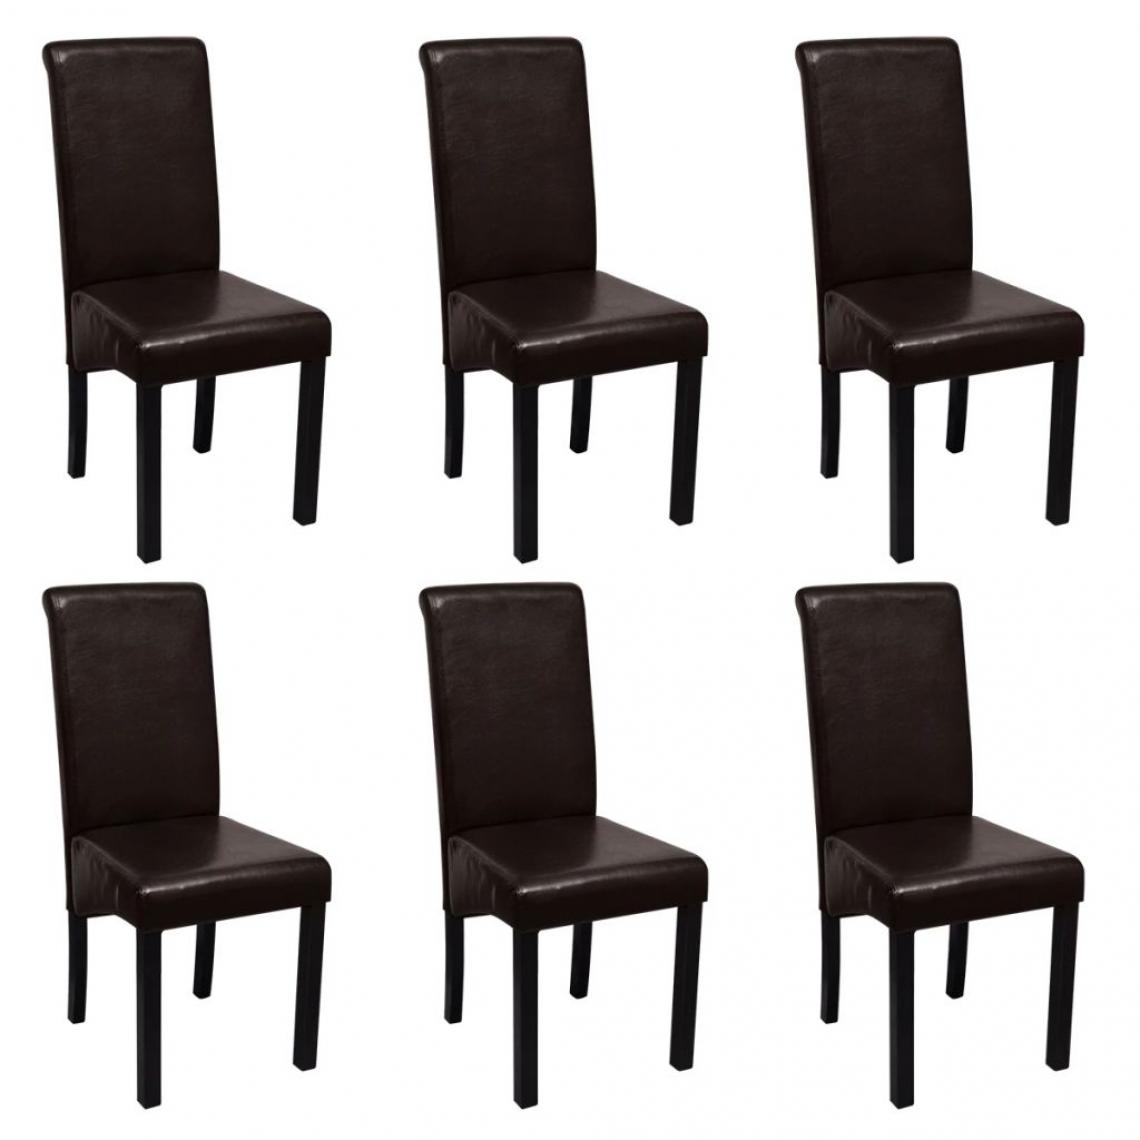 Decoshop26 - Lot de 6 chaises de salle à manger cuisine design moderne similicuir marron CDS022597 - Chaises